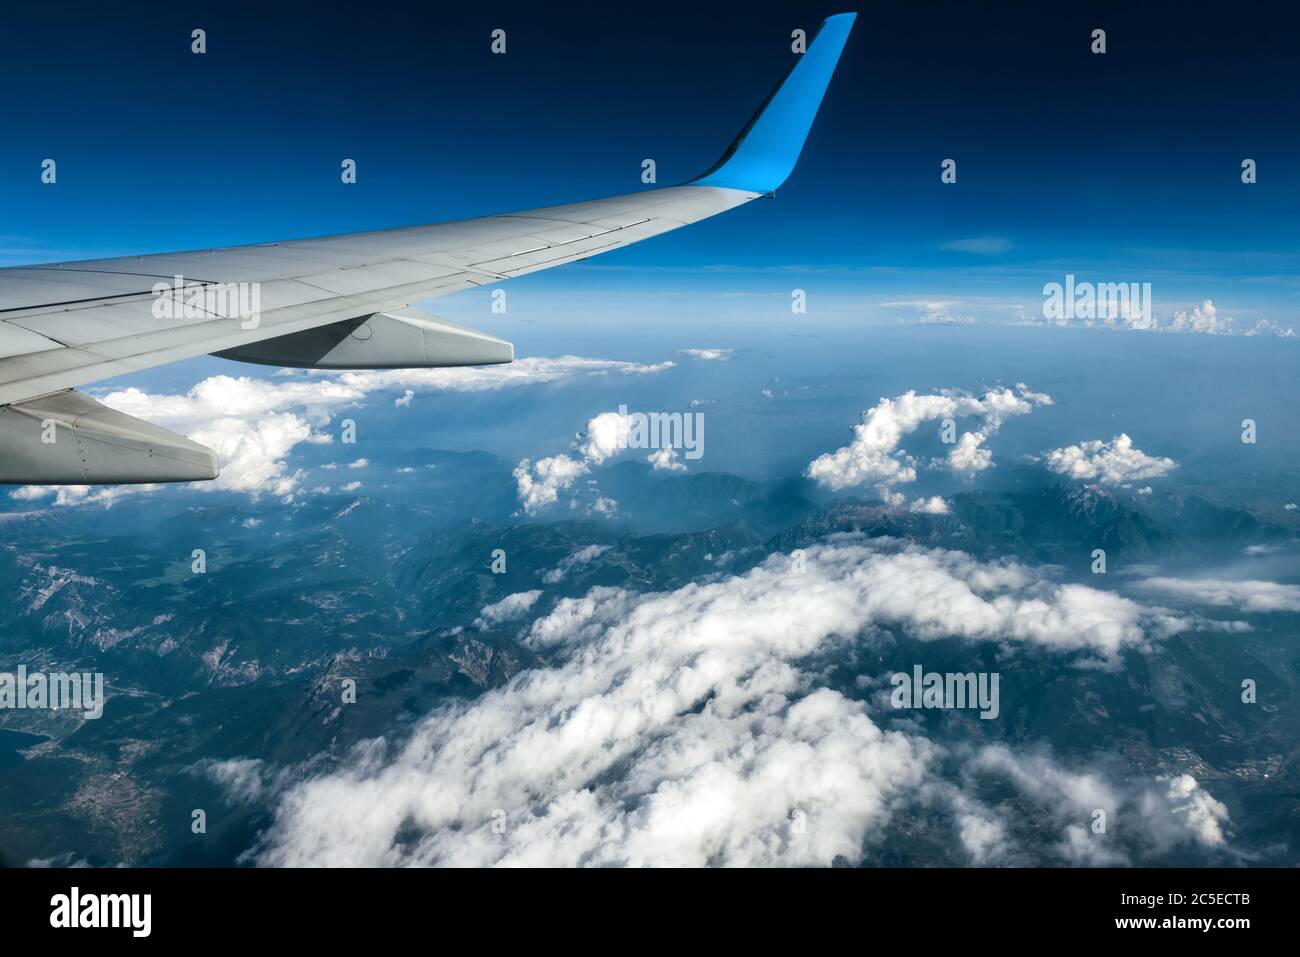 Ala di un aereo che vola sopra le nuvole. L'ala dell'aereo sullo sfondo blu del cielo e della terra. Vista panoramica aerea delle montagne dal vento aereo Foto Stock